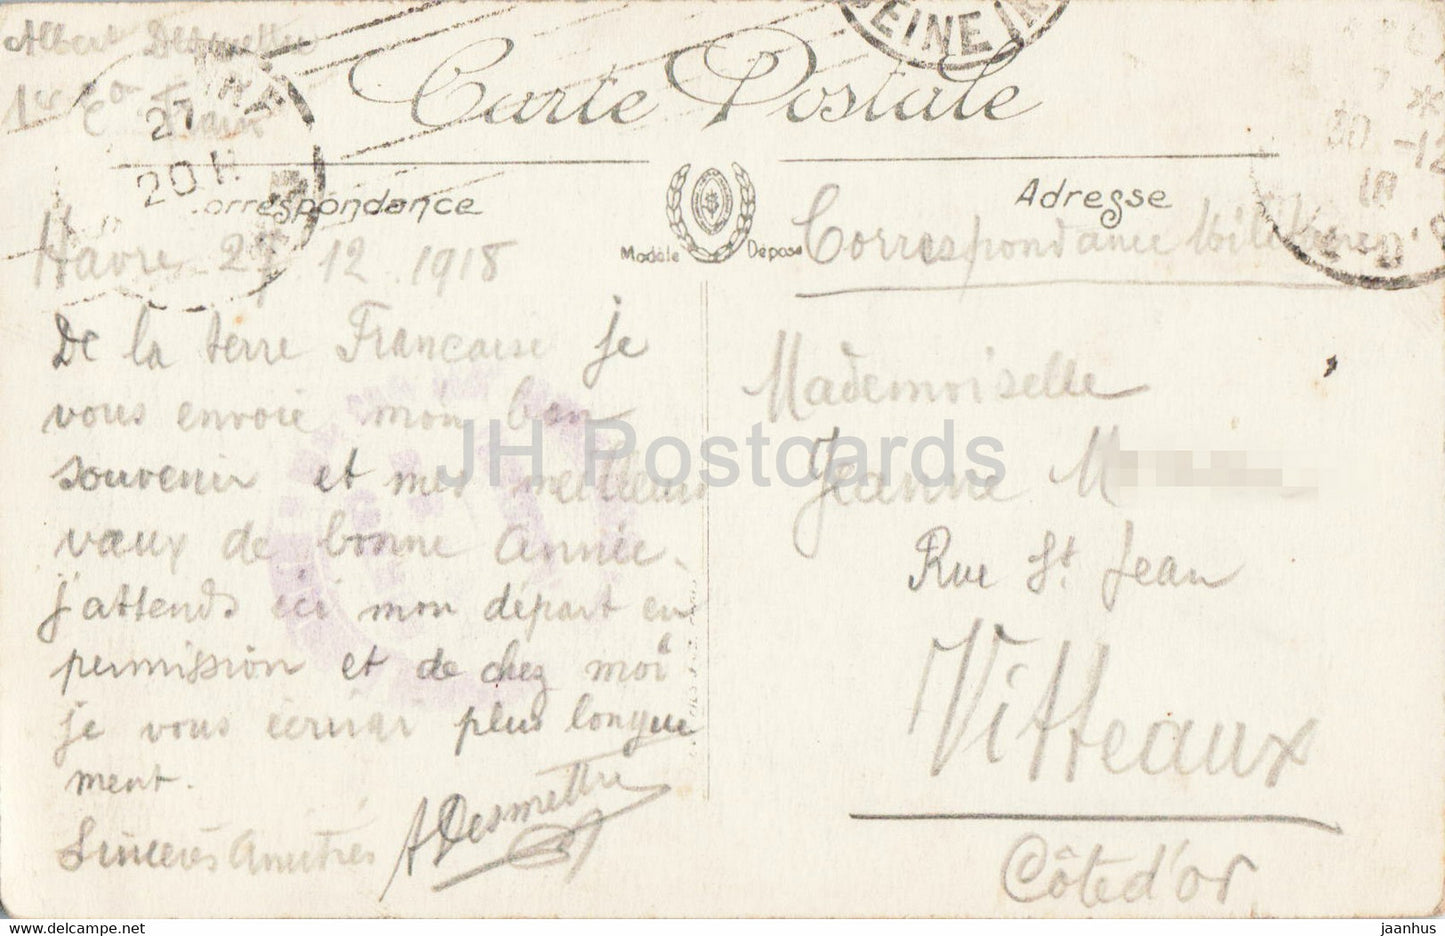 Sainte Adresse - L'Eglise de Ste Adresse - 182 - église - courrier militaire - carte postale ancienne - France - occasion